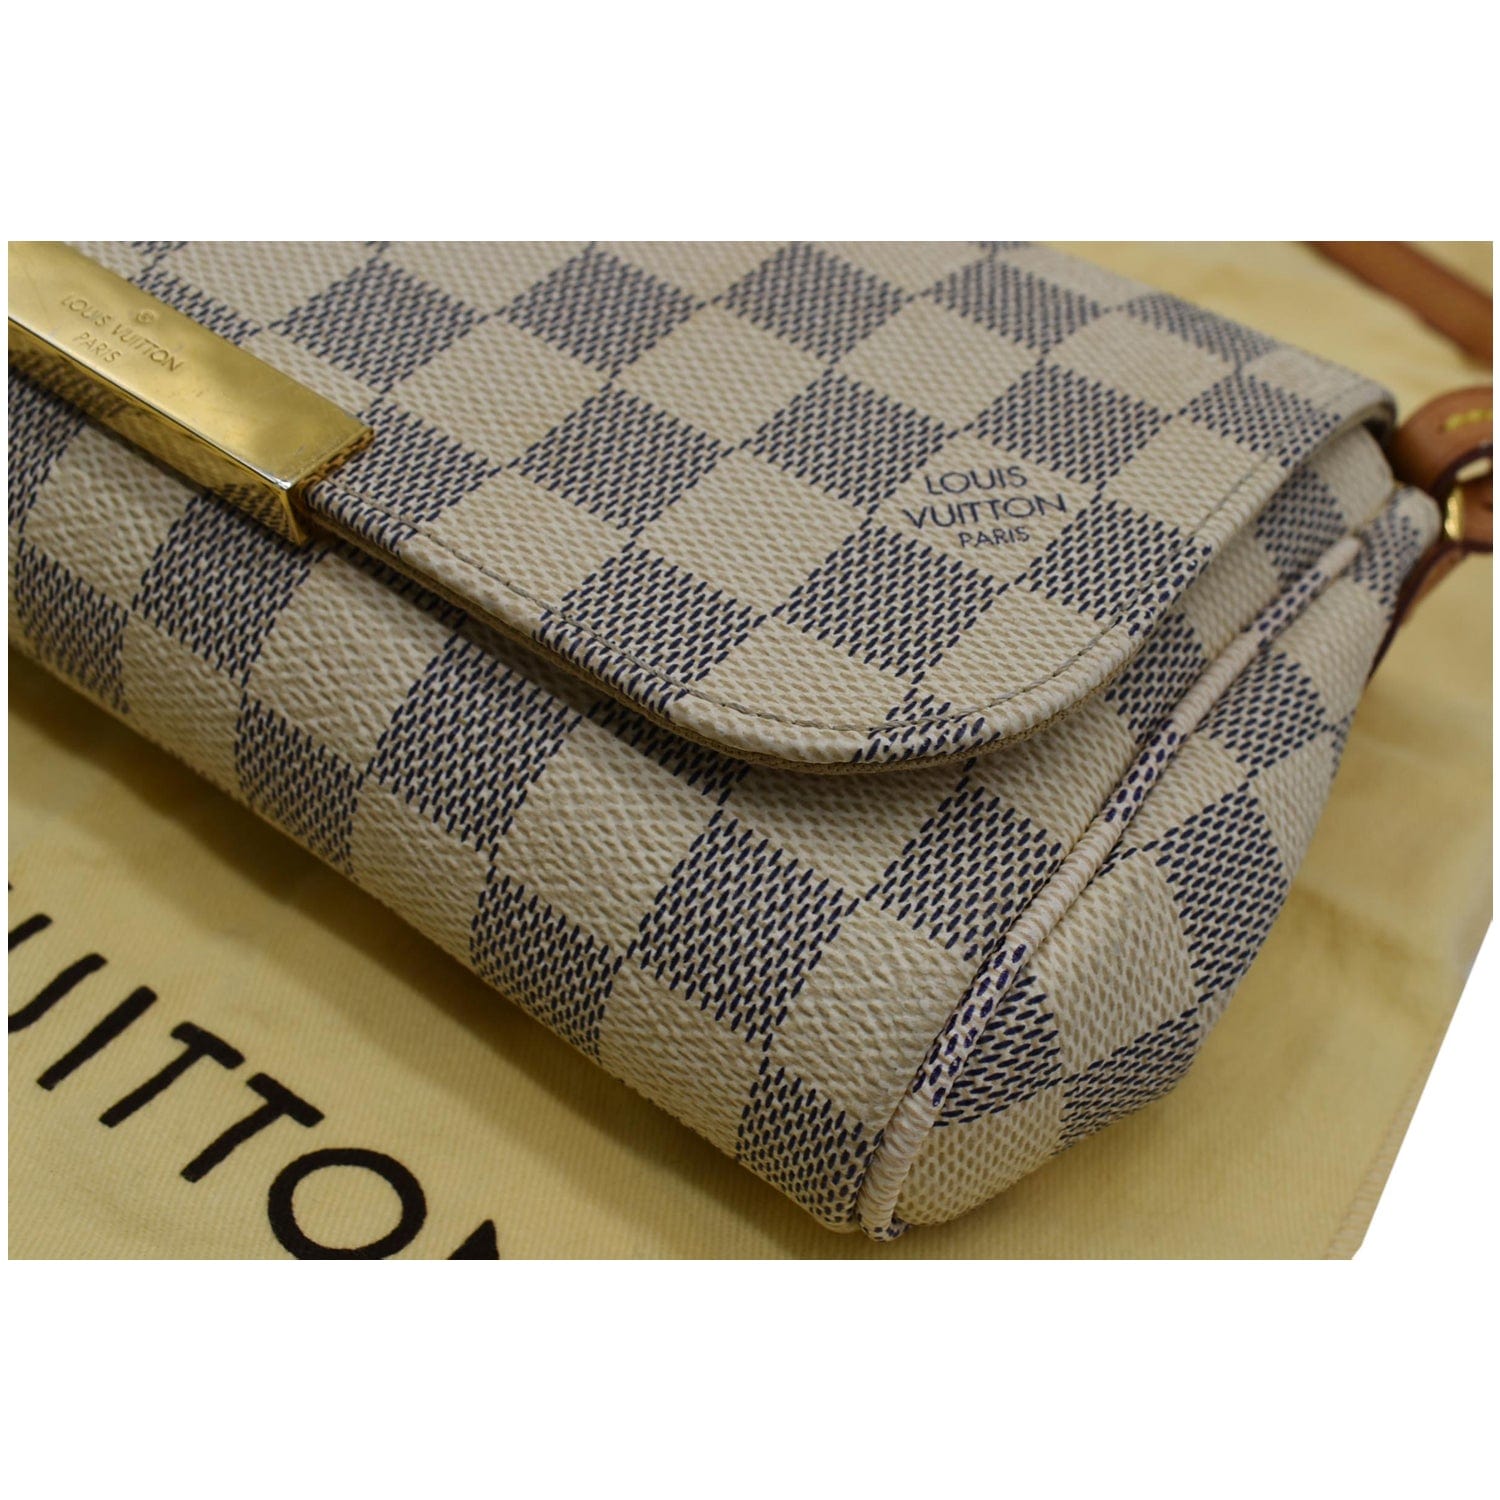 LOUIS VUITTON Louis Vuitton Damier Azur Favorite MM Clutch Bag